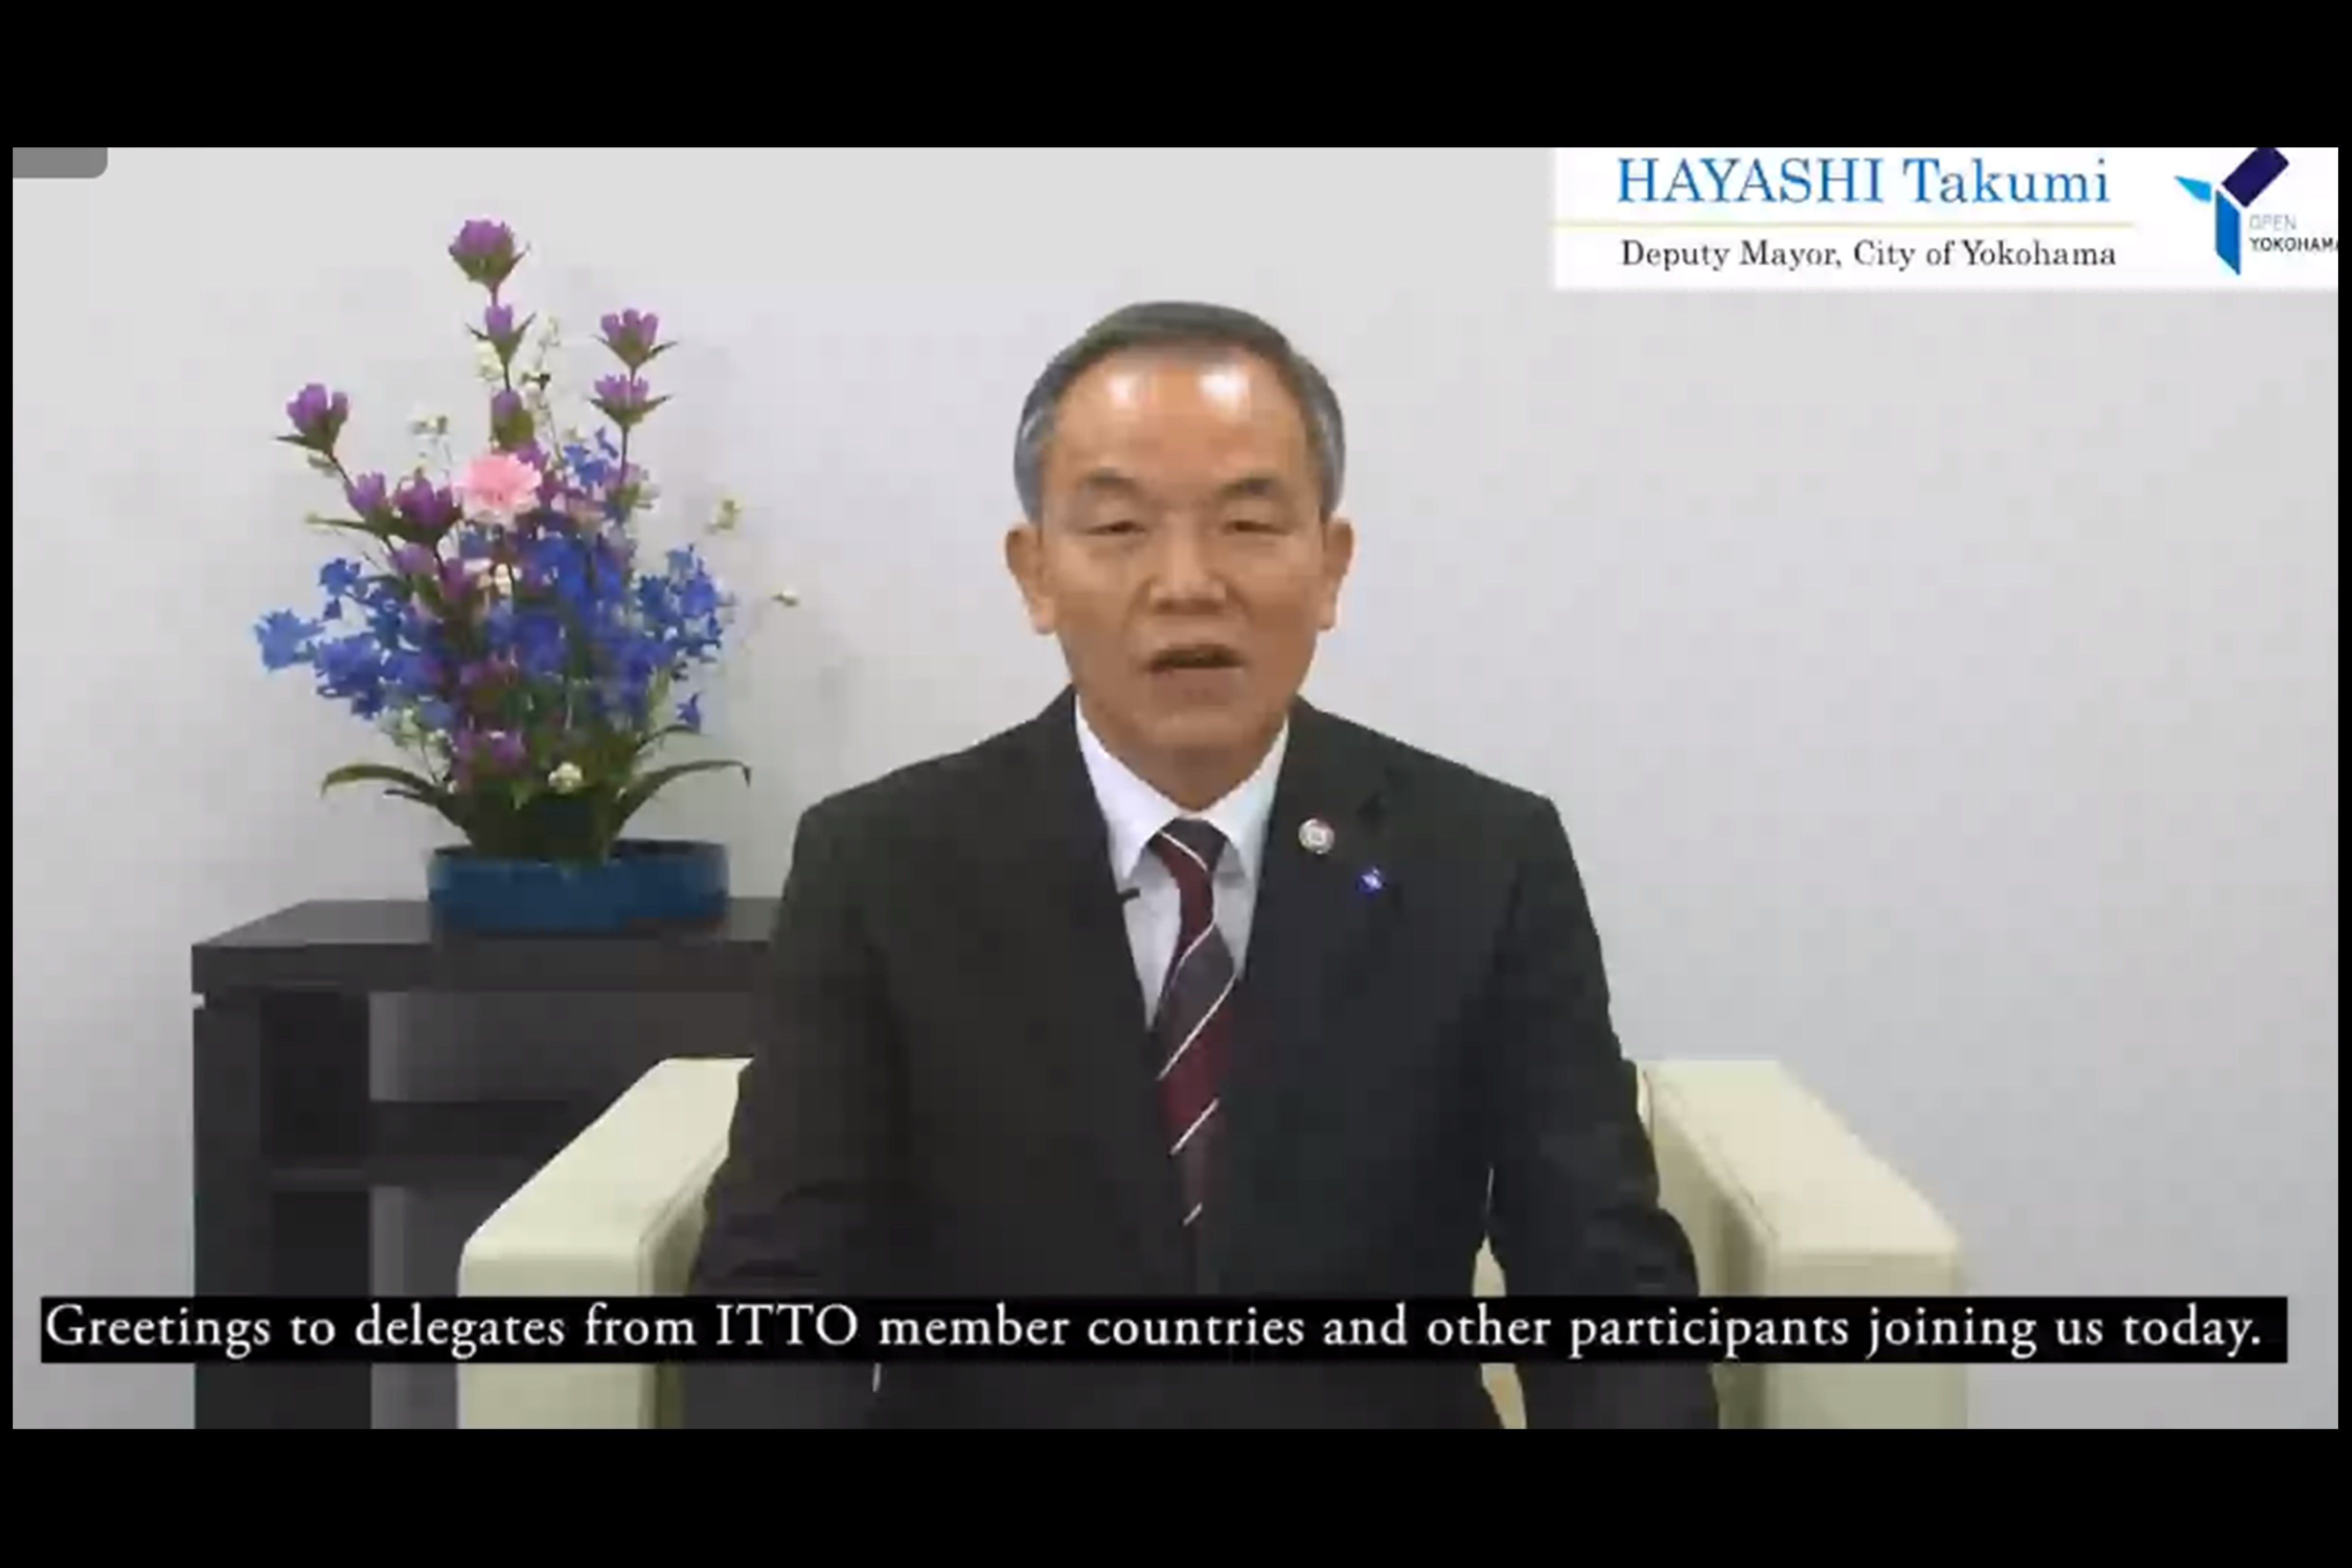 Yokohama Deputy Mayor Takumi Hayashi welcomes ITTC-56 delegates.